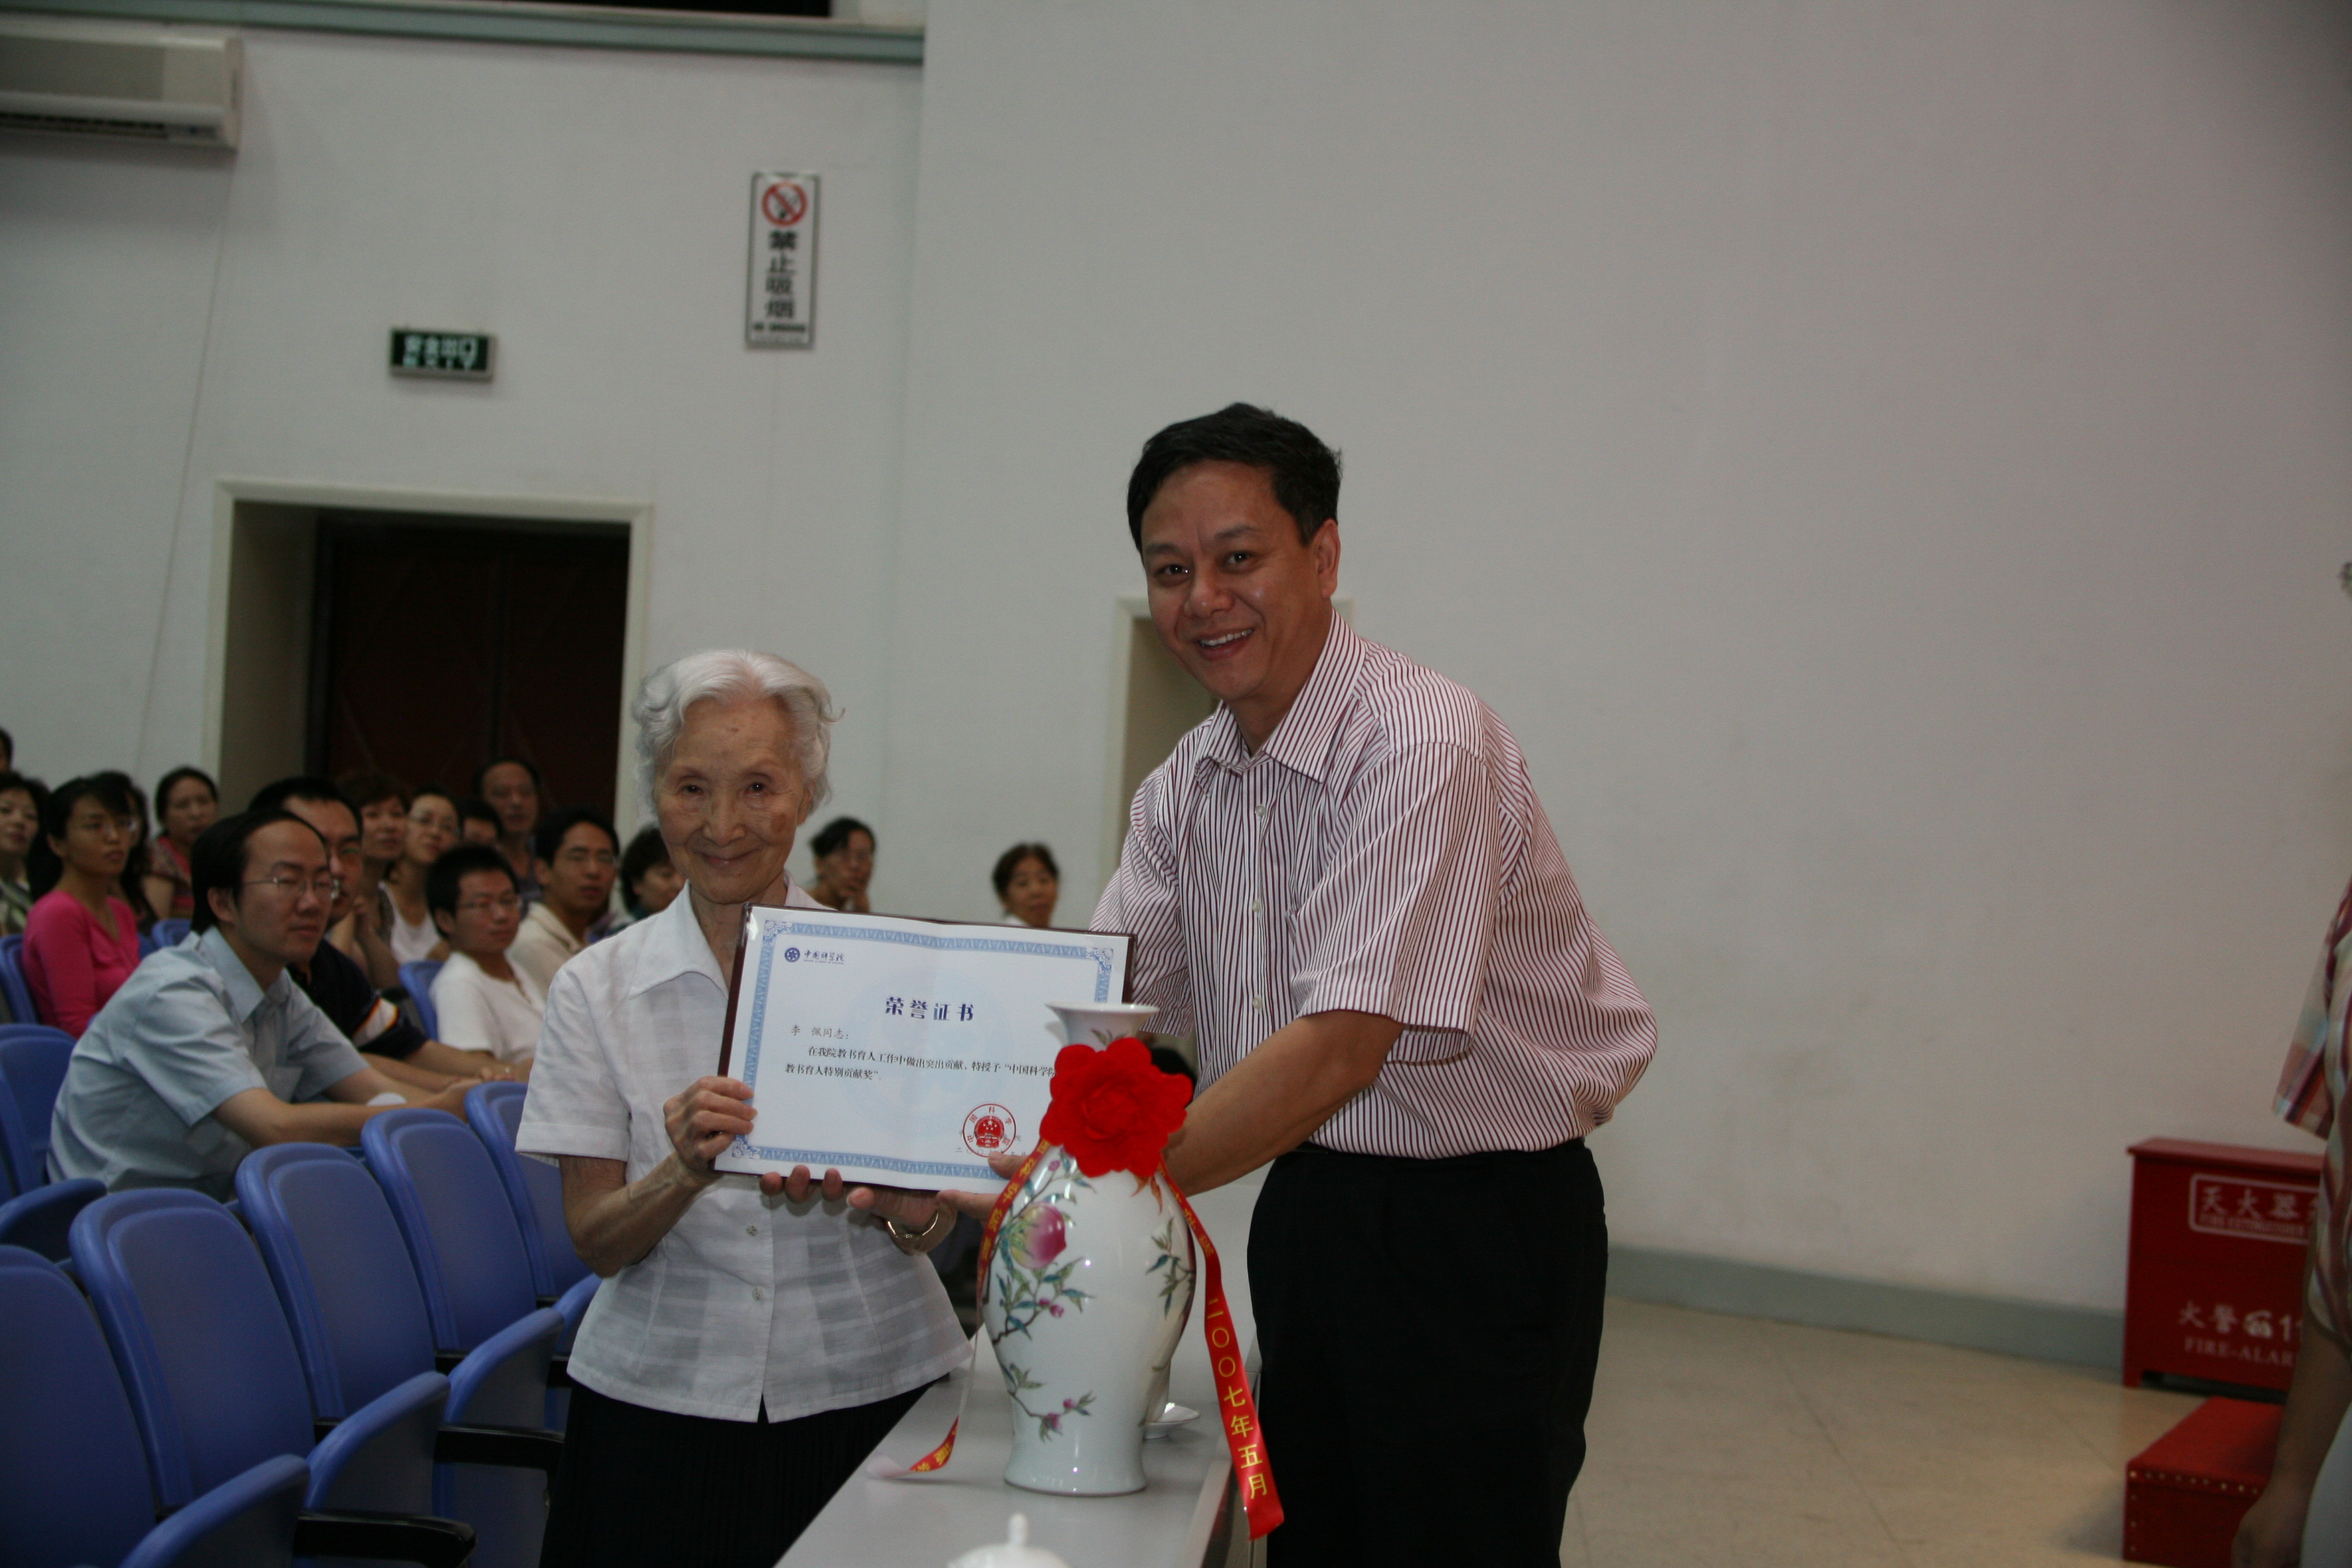 2007年5月李佩先生获得中国科学院教书育人特别贡献奖